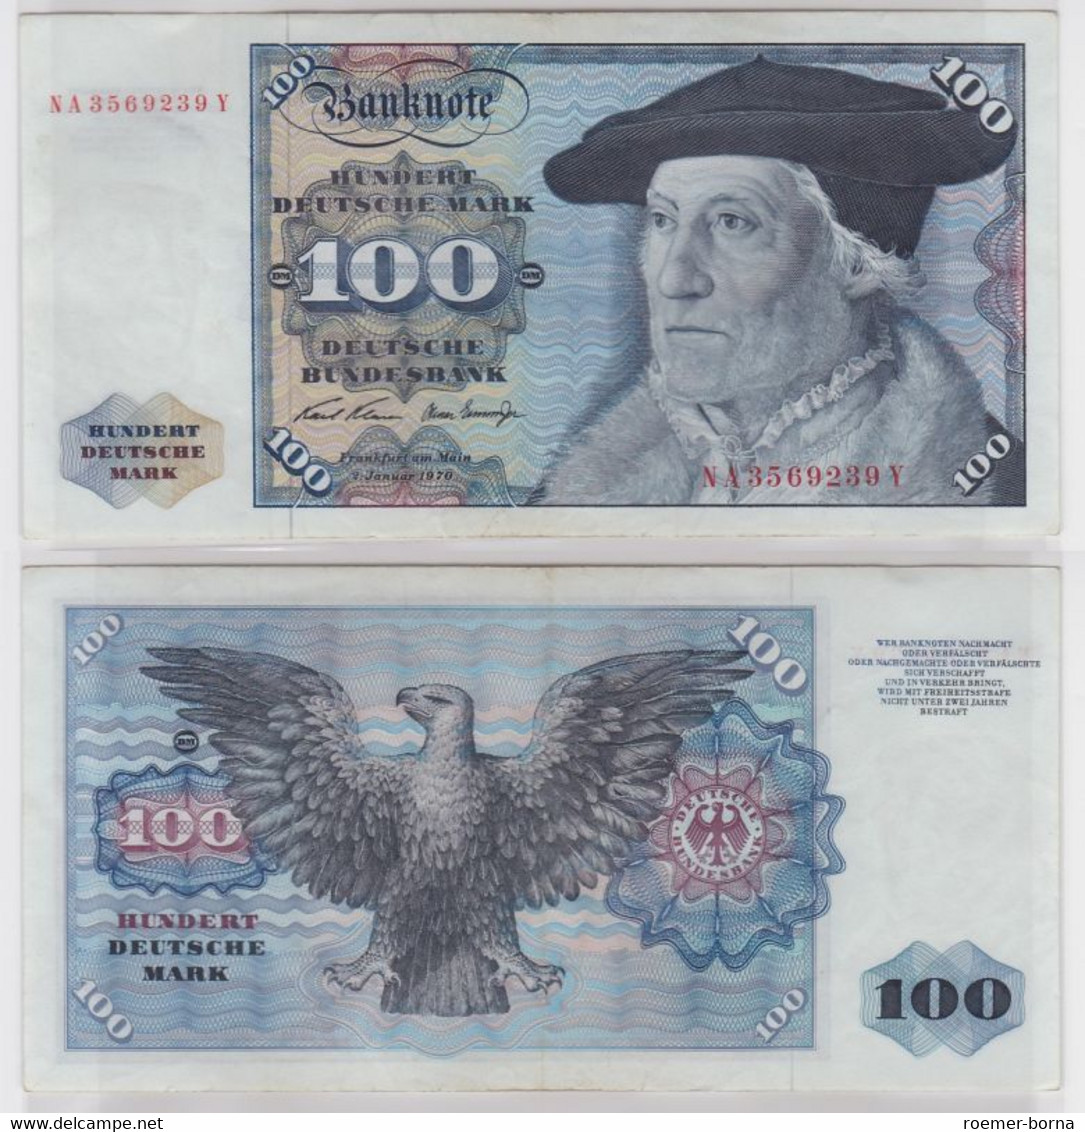 T144612 Banknote 100 DM Deutsche Mark Ro 273a Schein 2.Jan. 1970 KN NA 3569239 Y - 100 DM